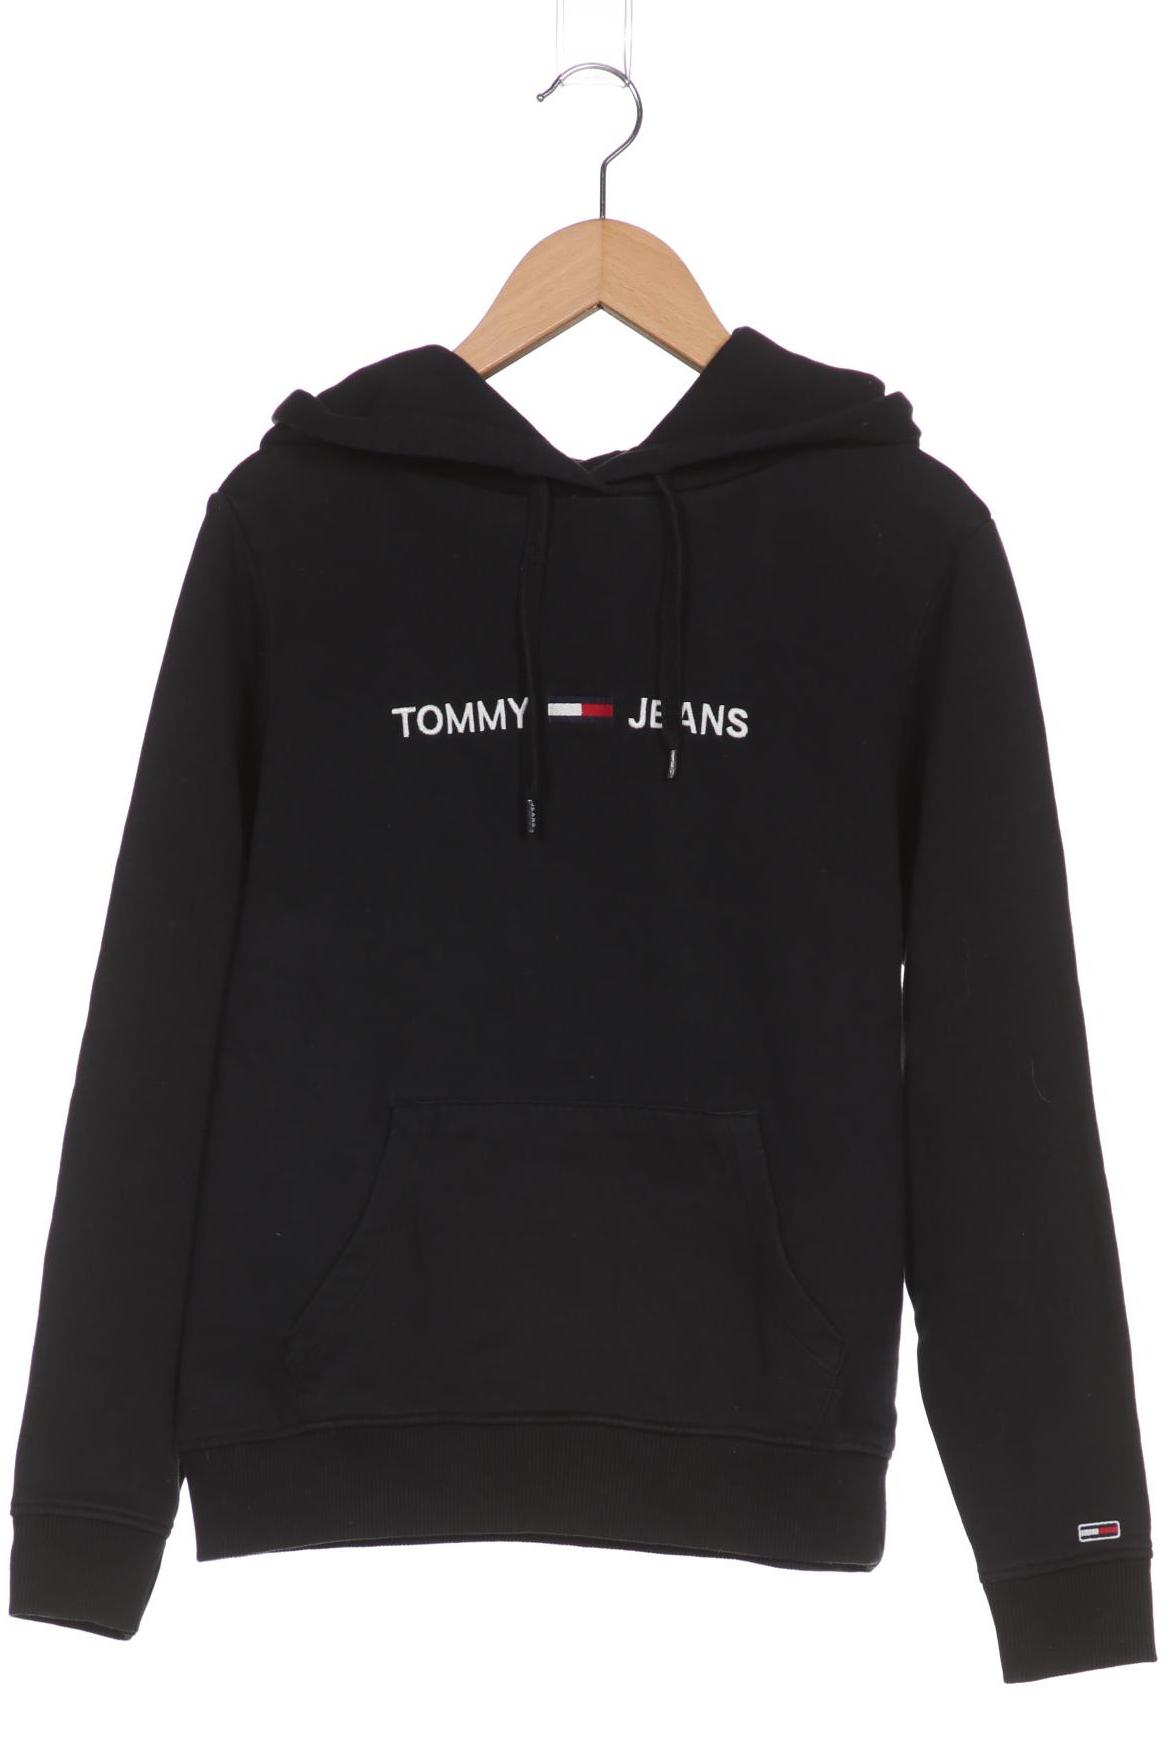 Tommy Jeans Damen Kapuzenpullover, schwarz von Tommy Jeans